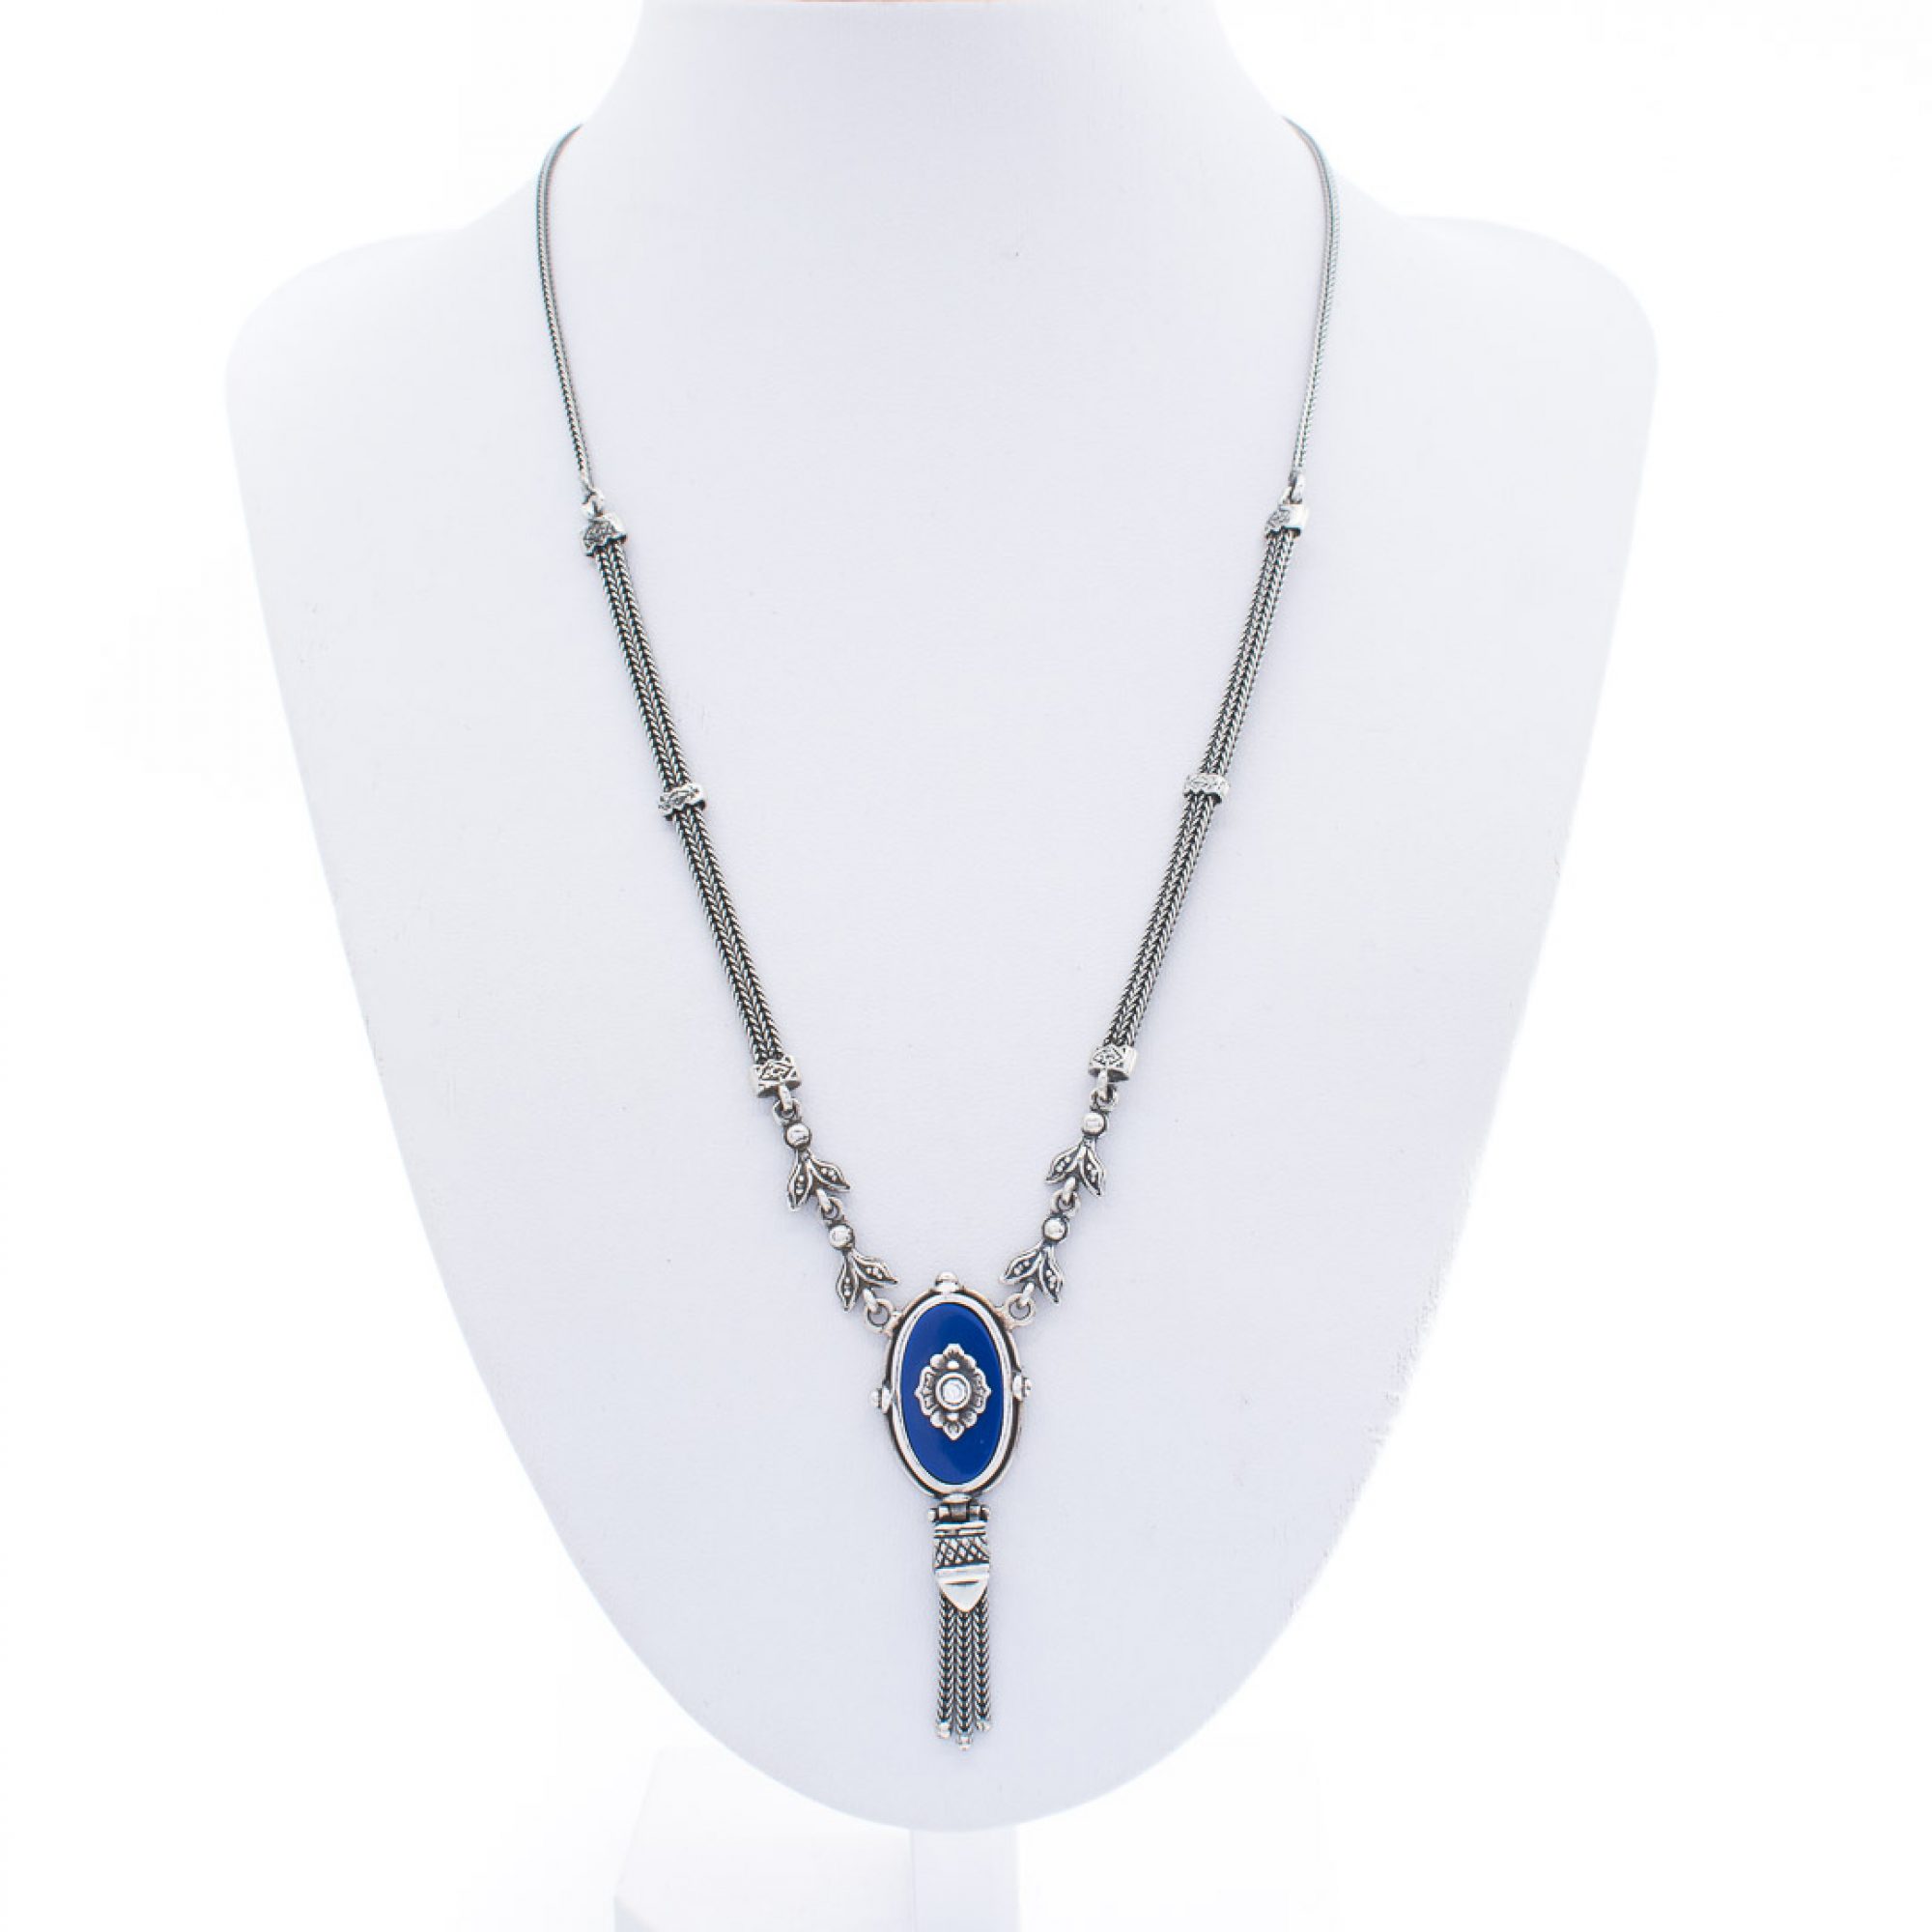 Oxidised necklace with lapis lazuli and zircon stones